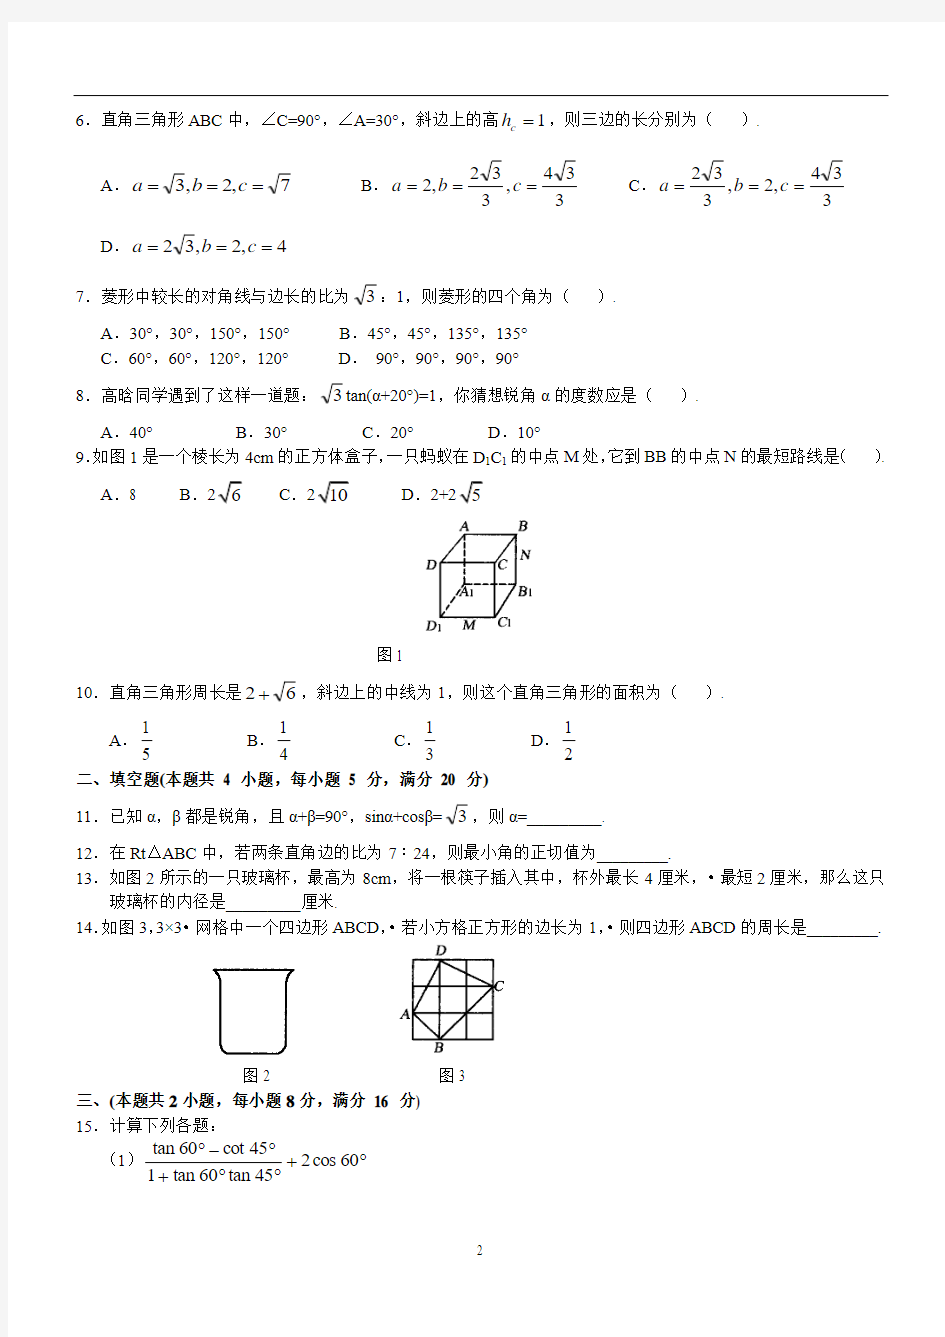 2011年中考zhongkao数学总复习专题测试卷(1--10)含参考答案